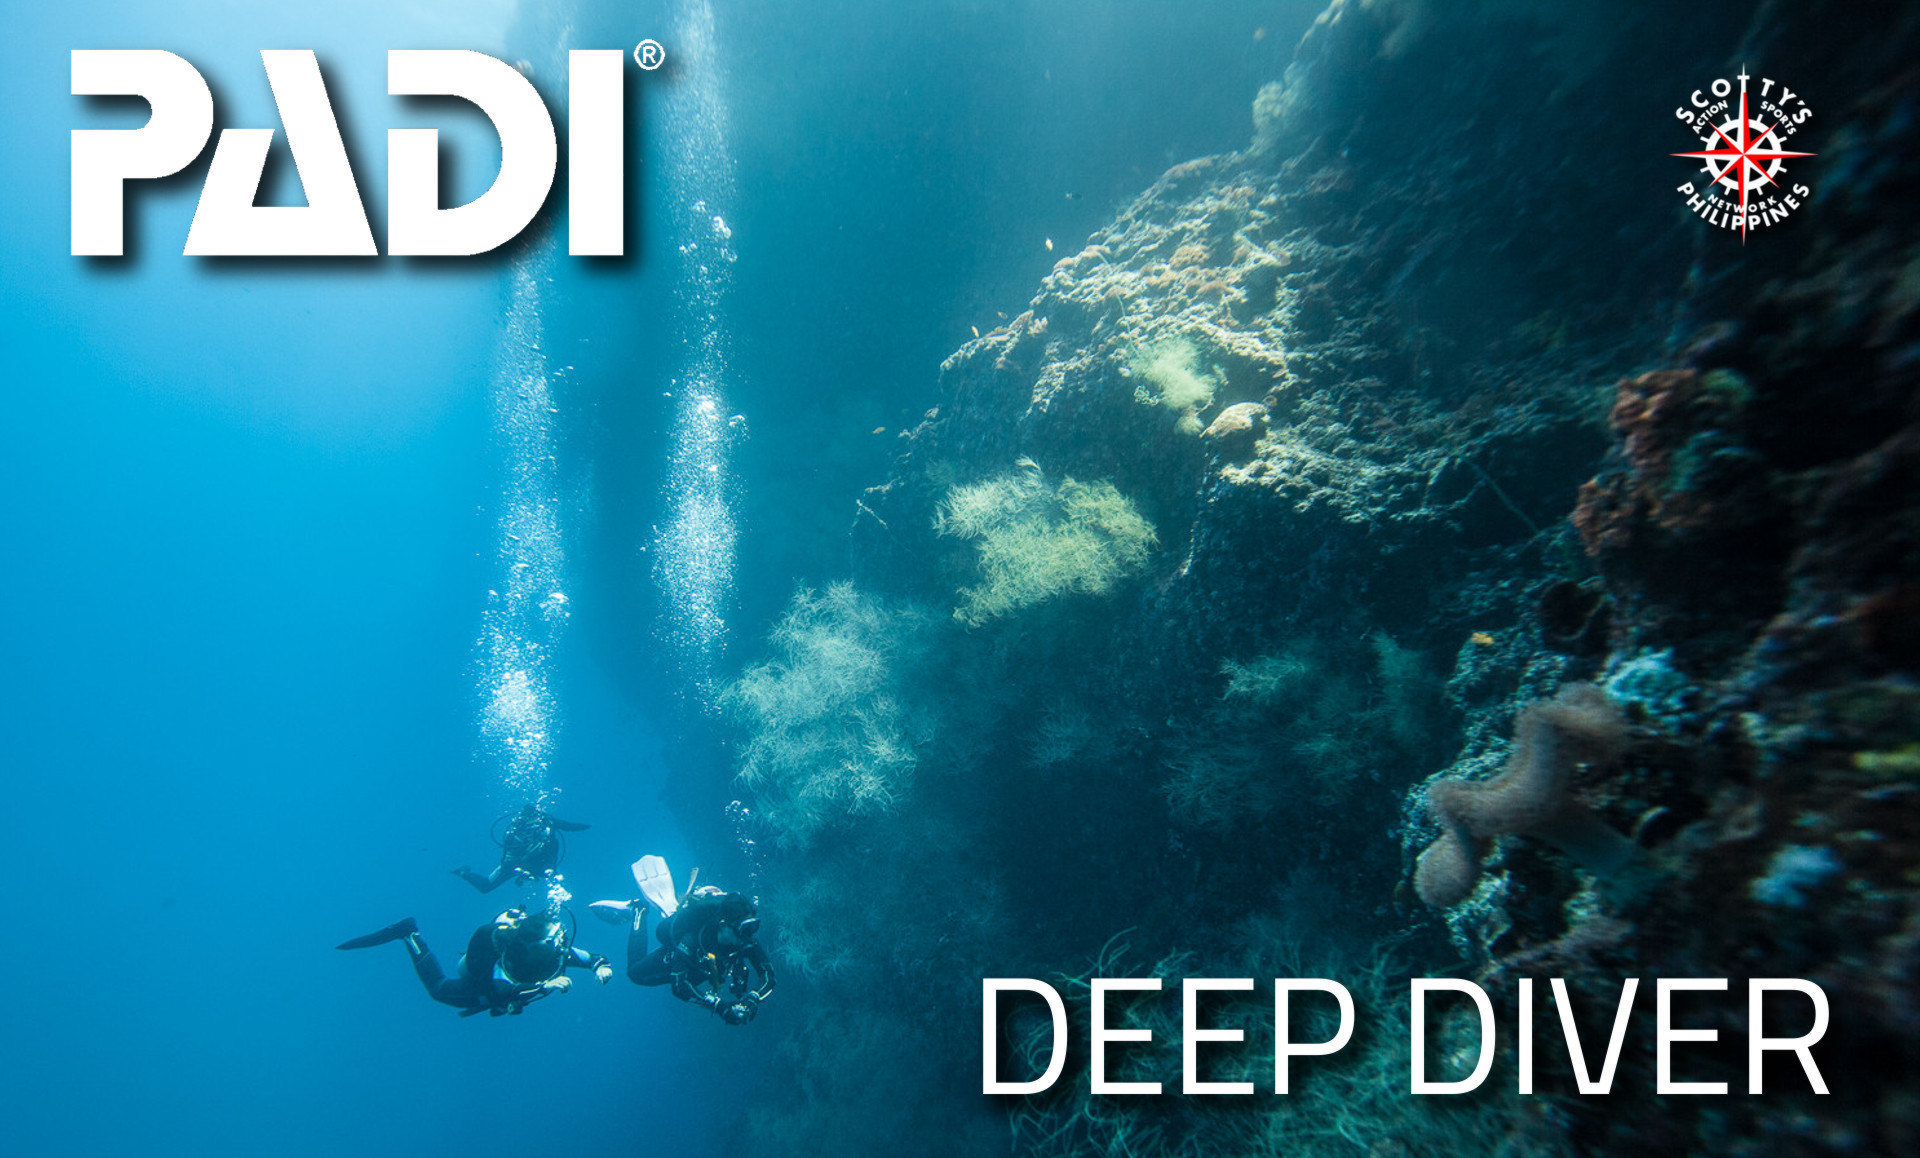 PADI deep diver course.